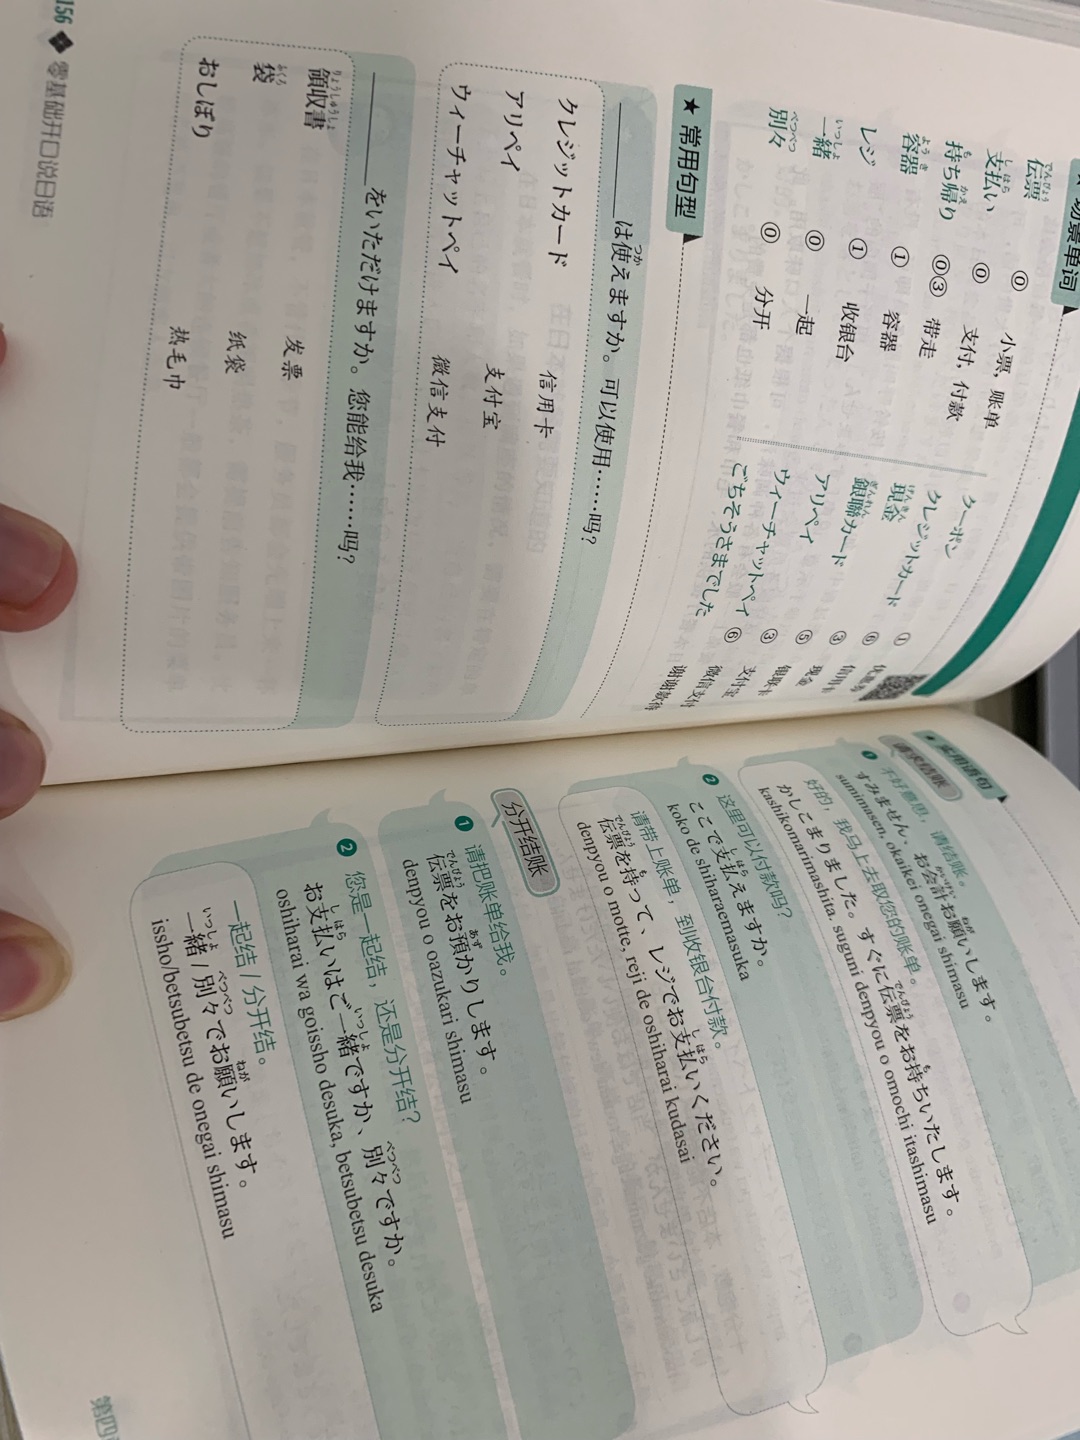 首先快递速度非常快，图书价格很亲民。新东方出版的。从日语的历史，日语的拼音，基础表达，心情表达，态度表达，意见表达。日常生活中的常用语，吃饭，就医，交通，沟通中很多方面都做了比较细致的介绍和教学，随书附带海报，非常方便！非常适合日语新手或者想去日本自由行的人购买！！棒极了！